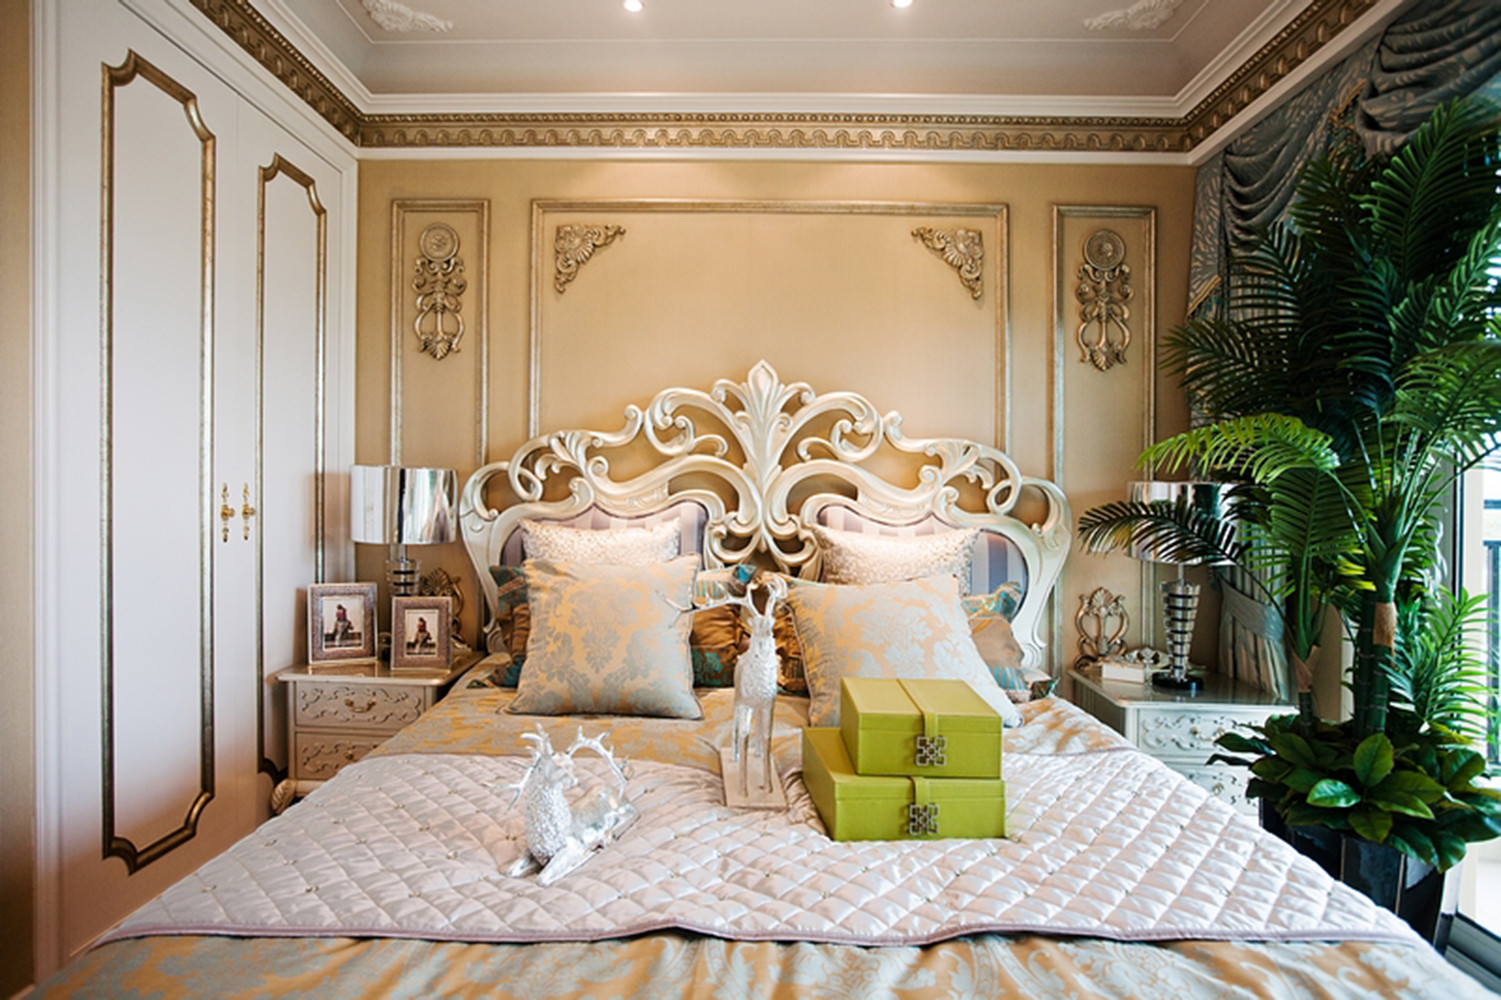 豪华型装修,140平米以上装修,复式装修,卧室,欧式风格,卧室背景墙,金色